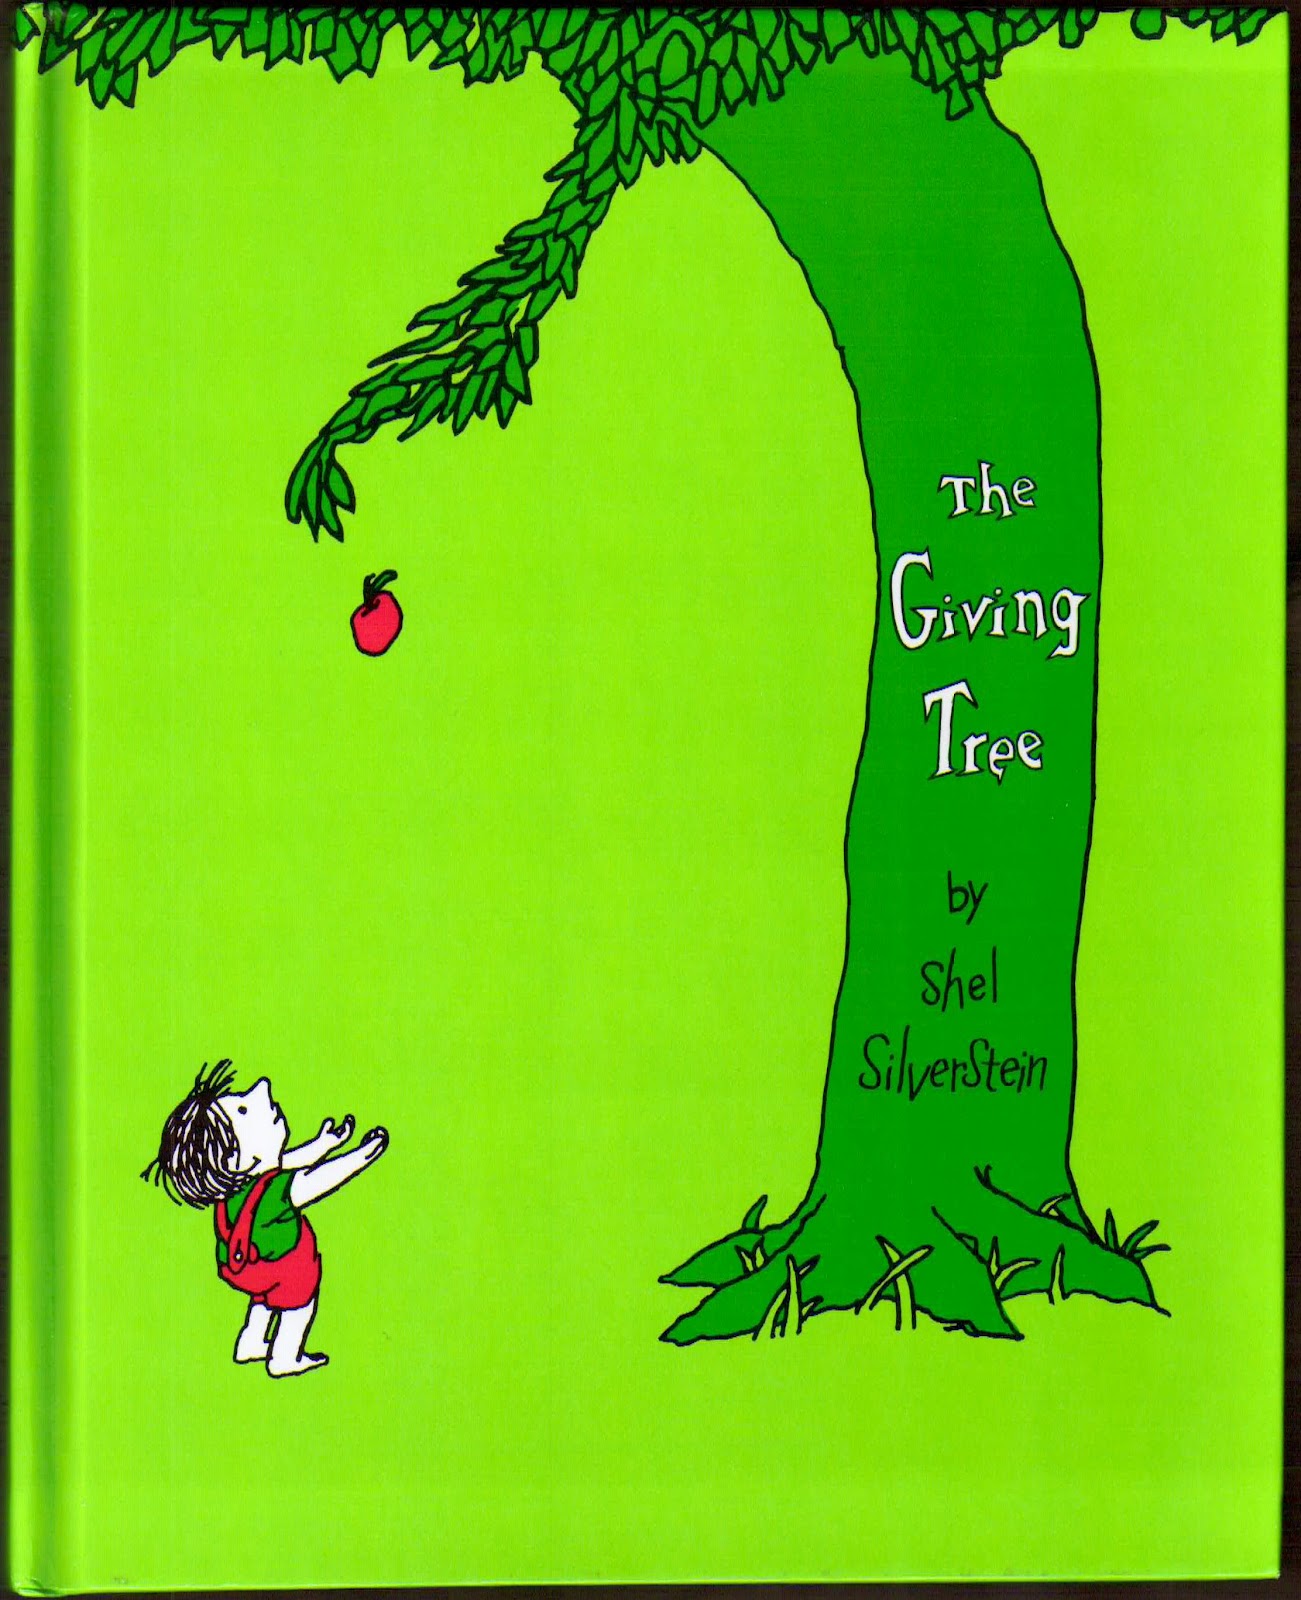 slis-5420-week-1-the-giving-tree